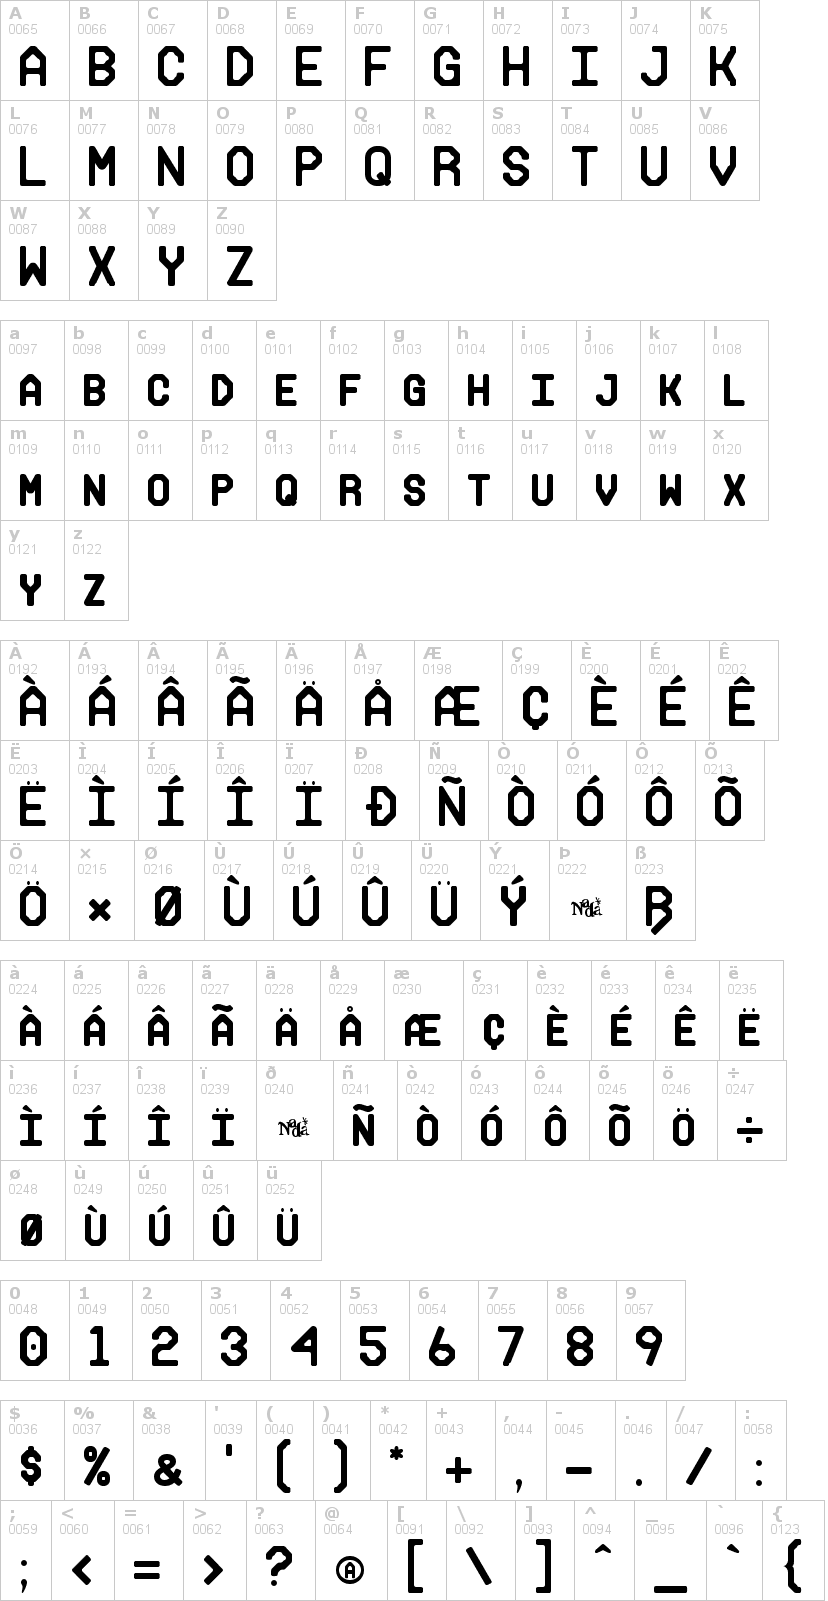 Lettere dell'alfabeto del font makisupa con le quali è possibile realizzare adesivi prespaziati